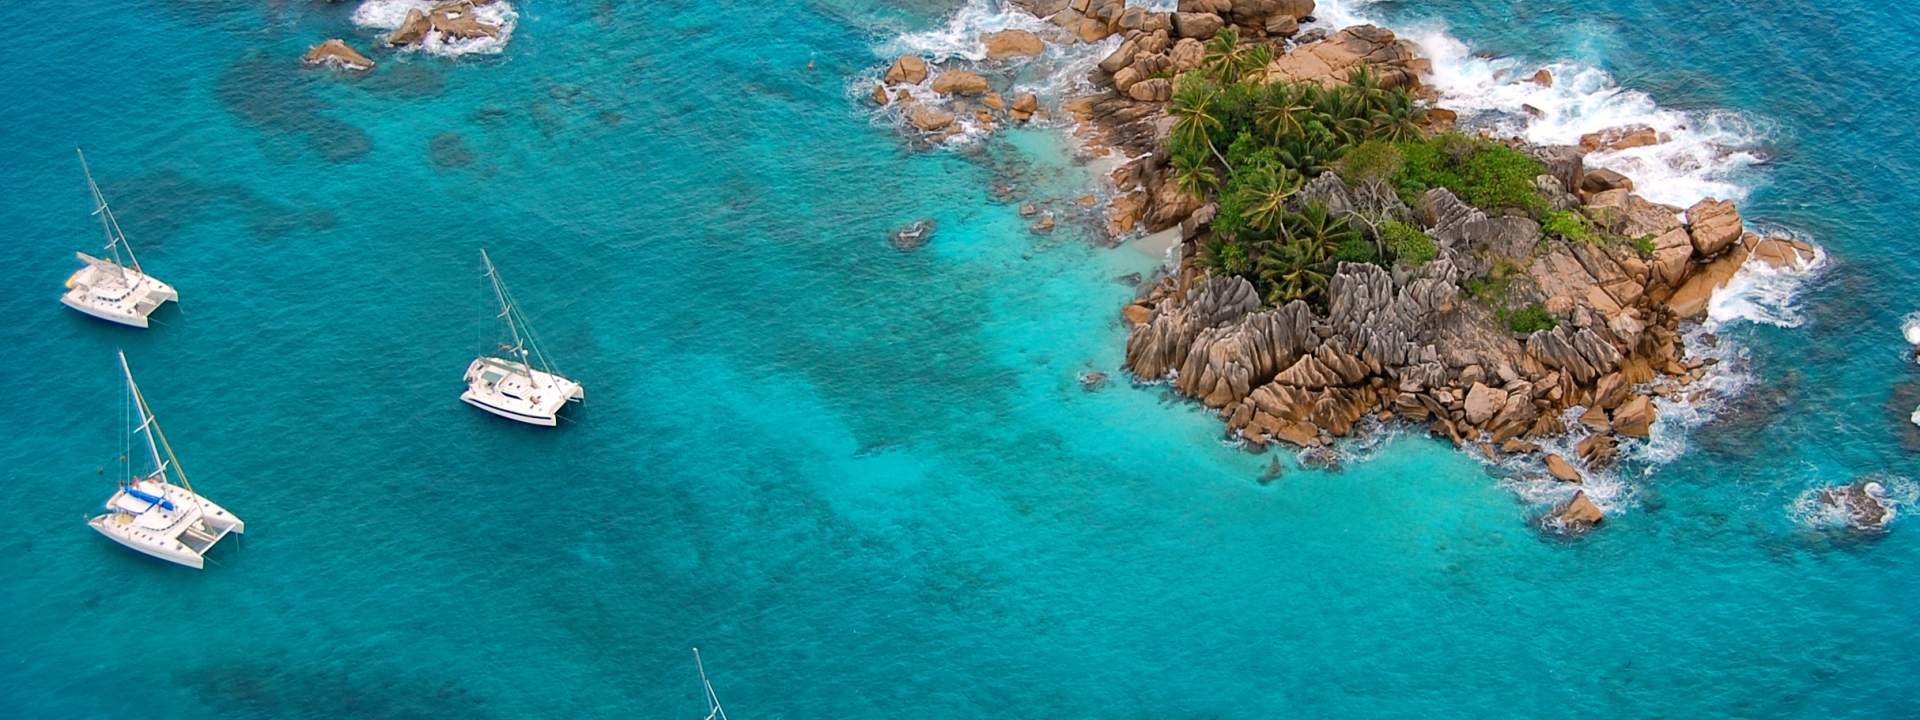 Scoprite le Seychelles a bordo di un sontuoso catamarano con equipaggio